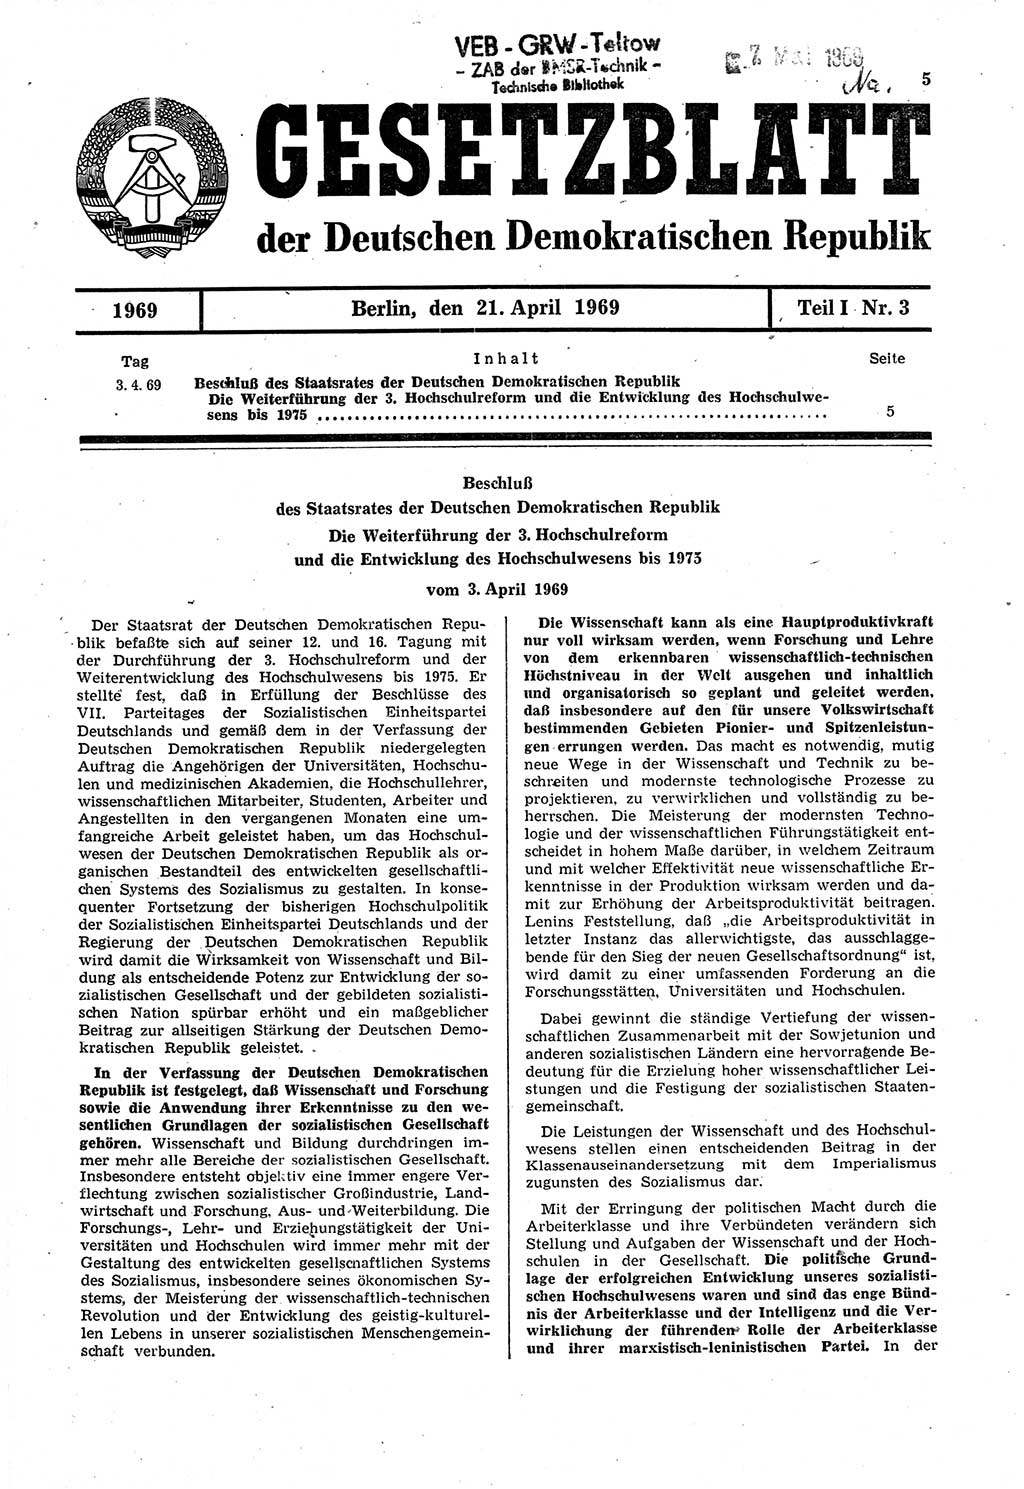 Gesetzblatt (GBl.) der Deutschen Demokratischen Republik (DDR) Teil Ⅰ 1969, Seite 5 (GBl. DDR Ⅰ 1969, S. 5)